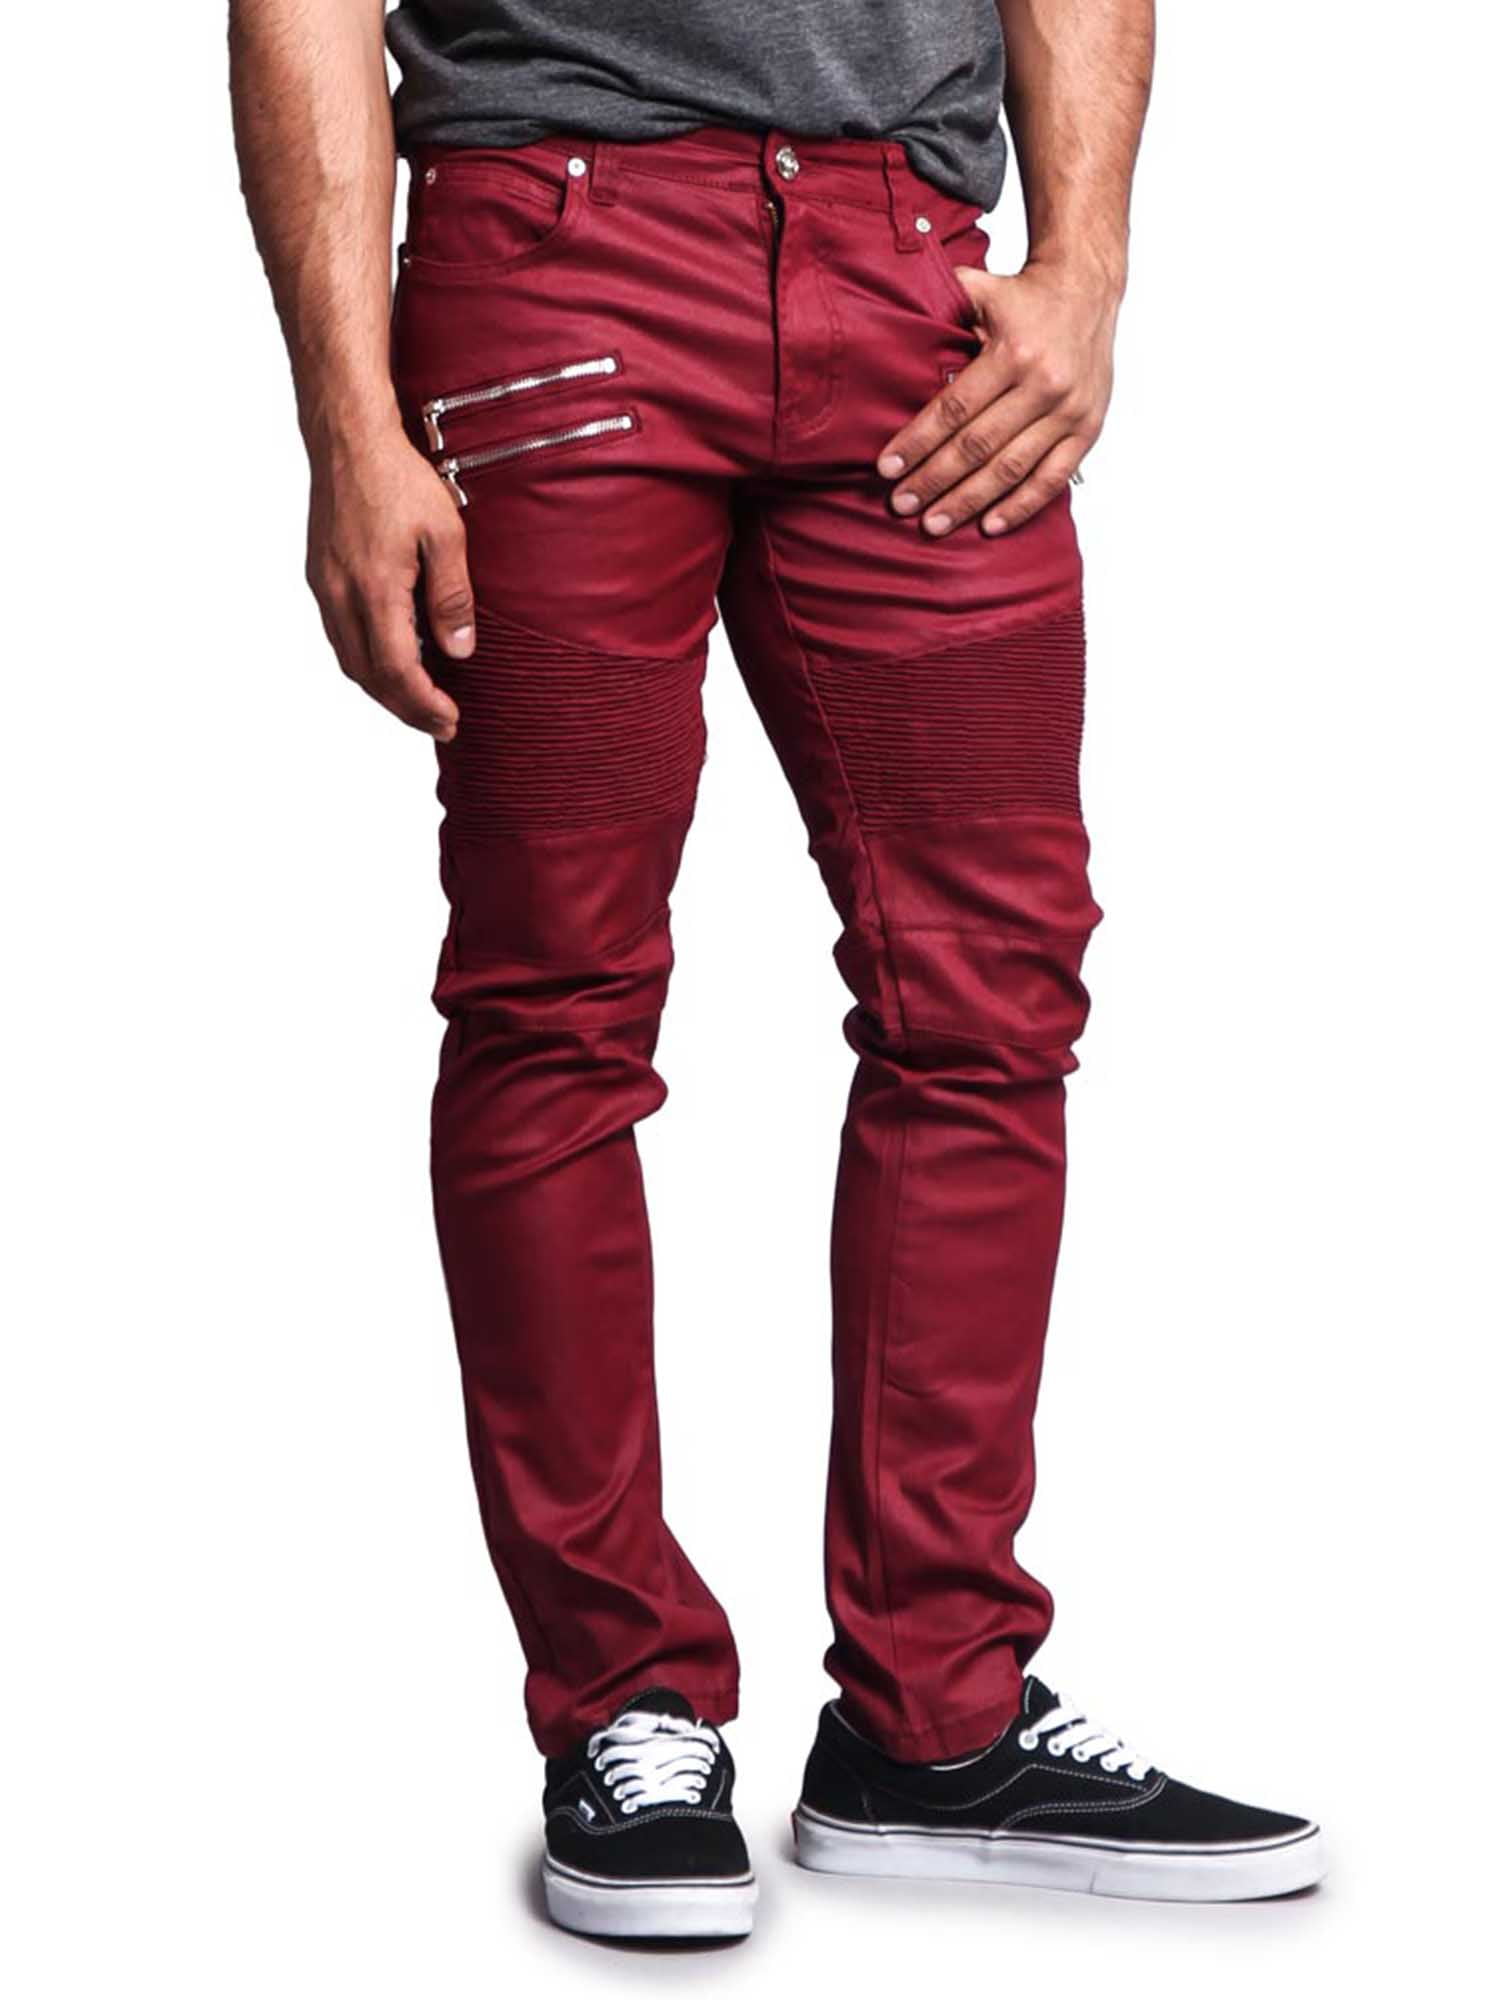 schoner reactie inch Victorious Men's Coated Slim Fit Moto Pants Biker Jeans - Khaki - 40/32 -  Walmart.com